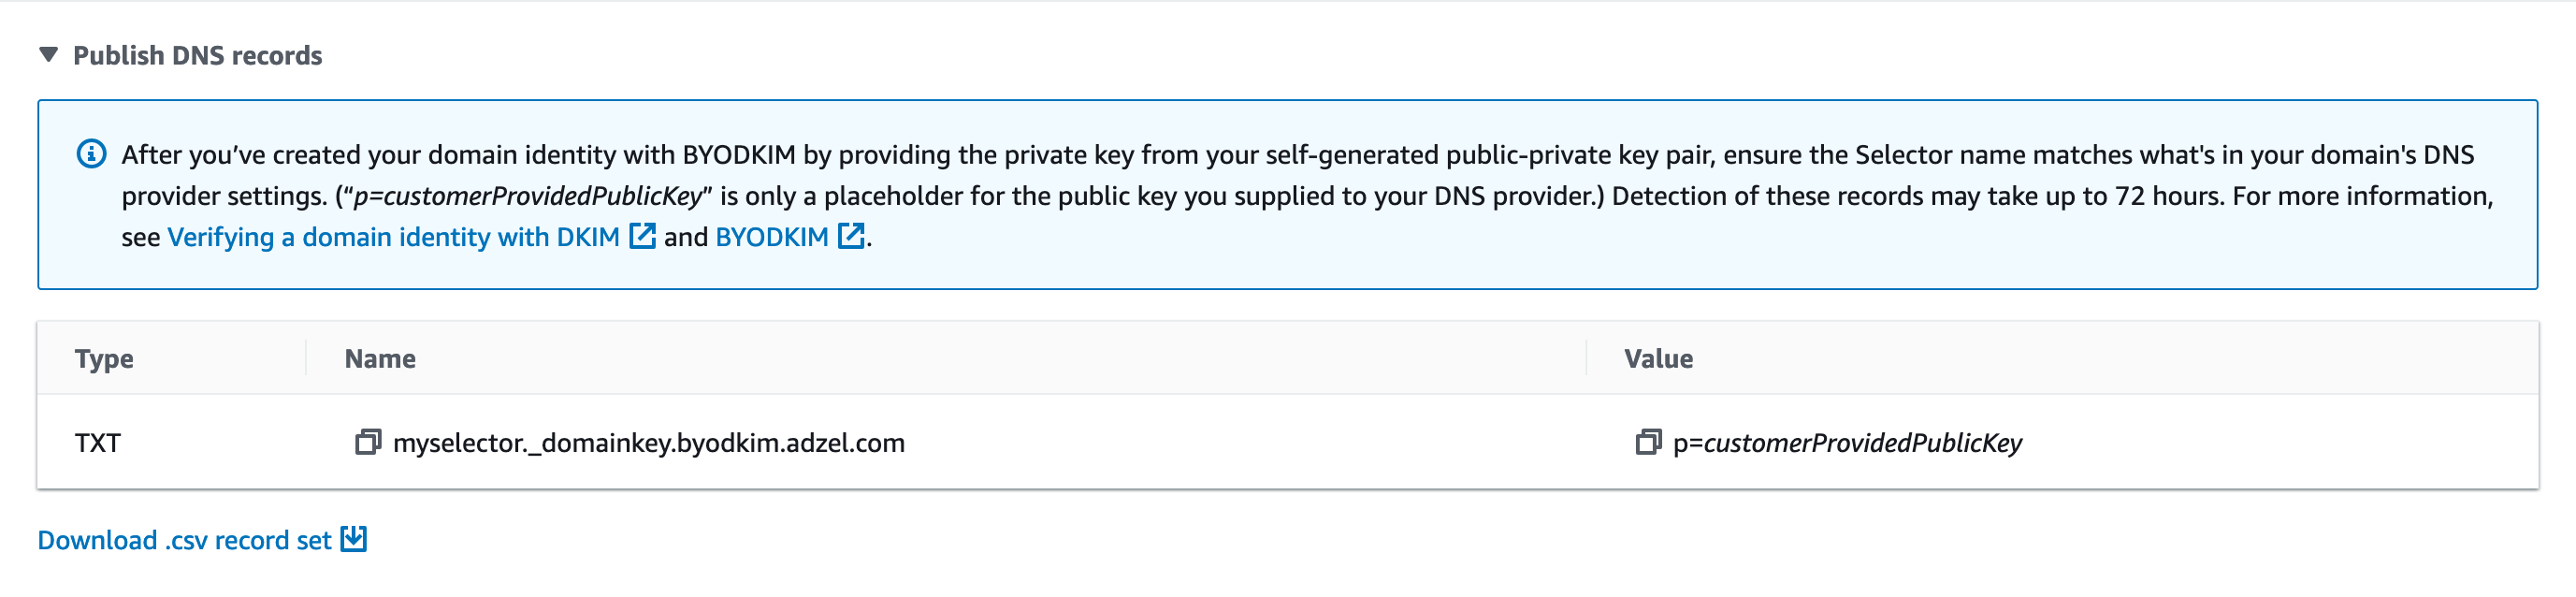 
                                        身份的详细信息页的 DKIM 部分。显示了三个虚构的 CNAME 记录。
                                    